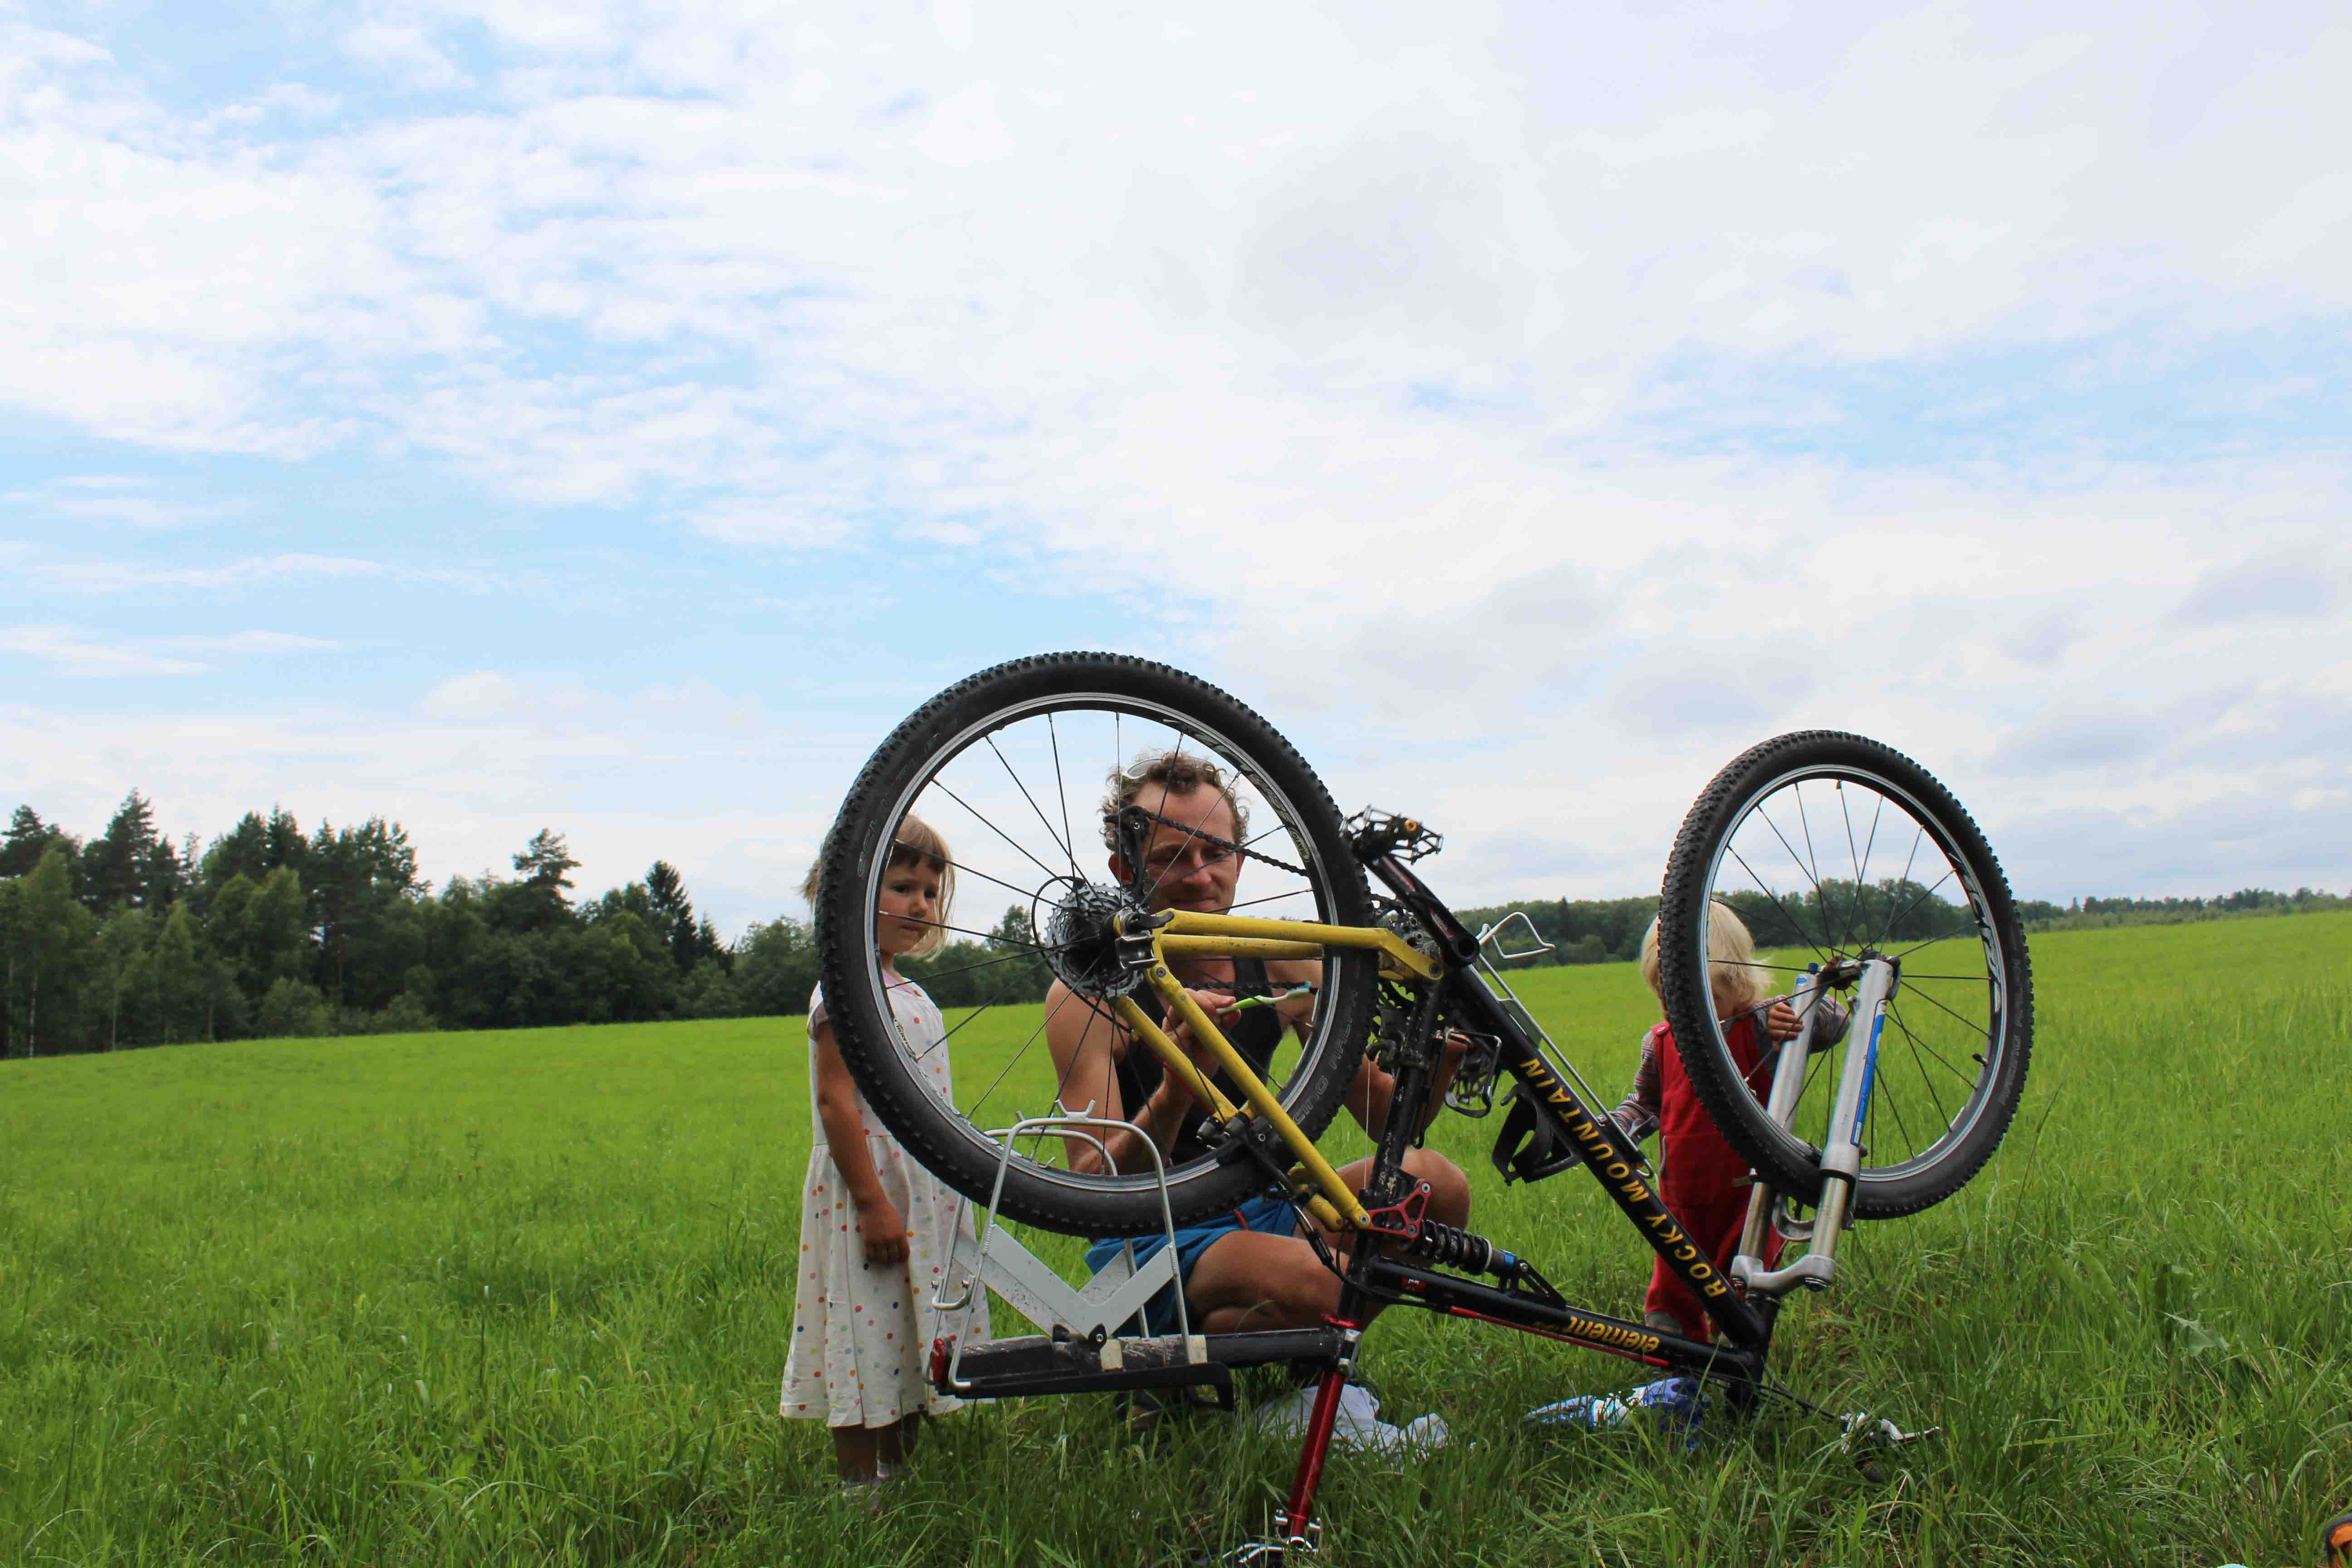 Radreise Familie Ausrüstung - Unsere Stories und Tipps. Begleite uns und unsere 3 Kinder auf unseren Reisen mit Fahrrad und Zelt! 8 Monate Süd-Ost Europa...